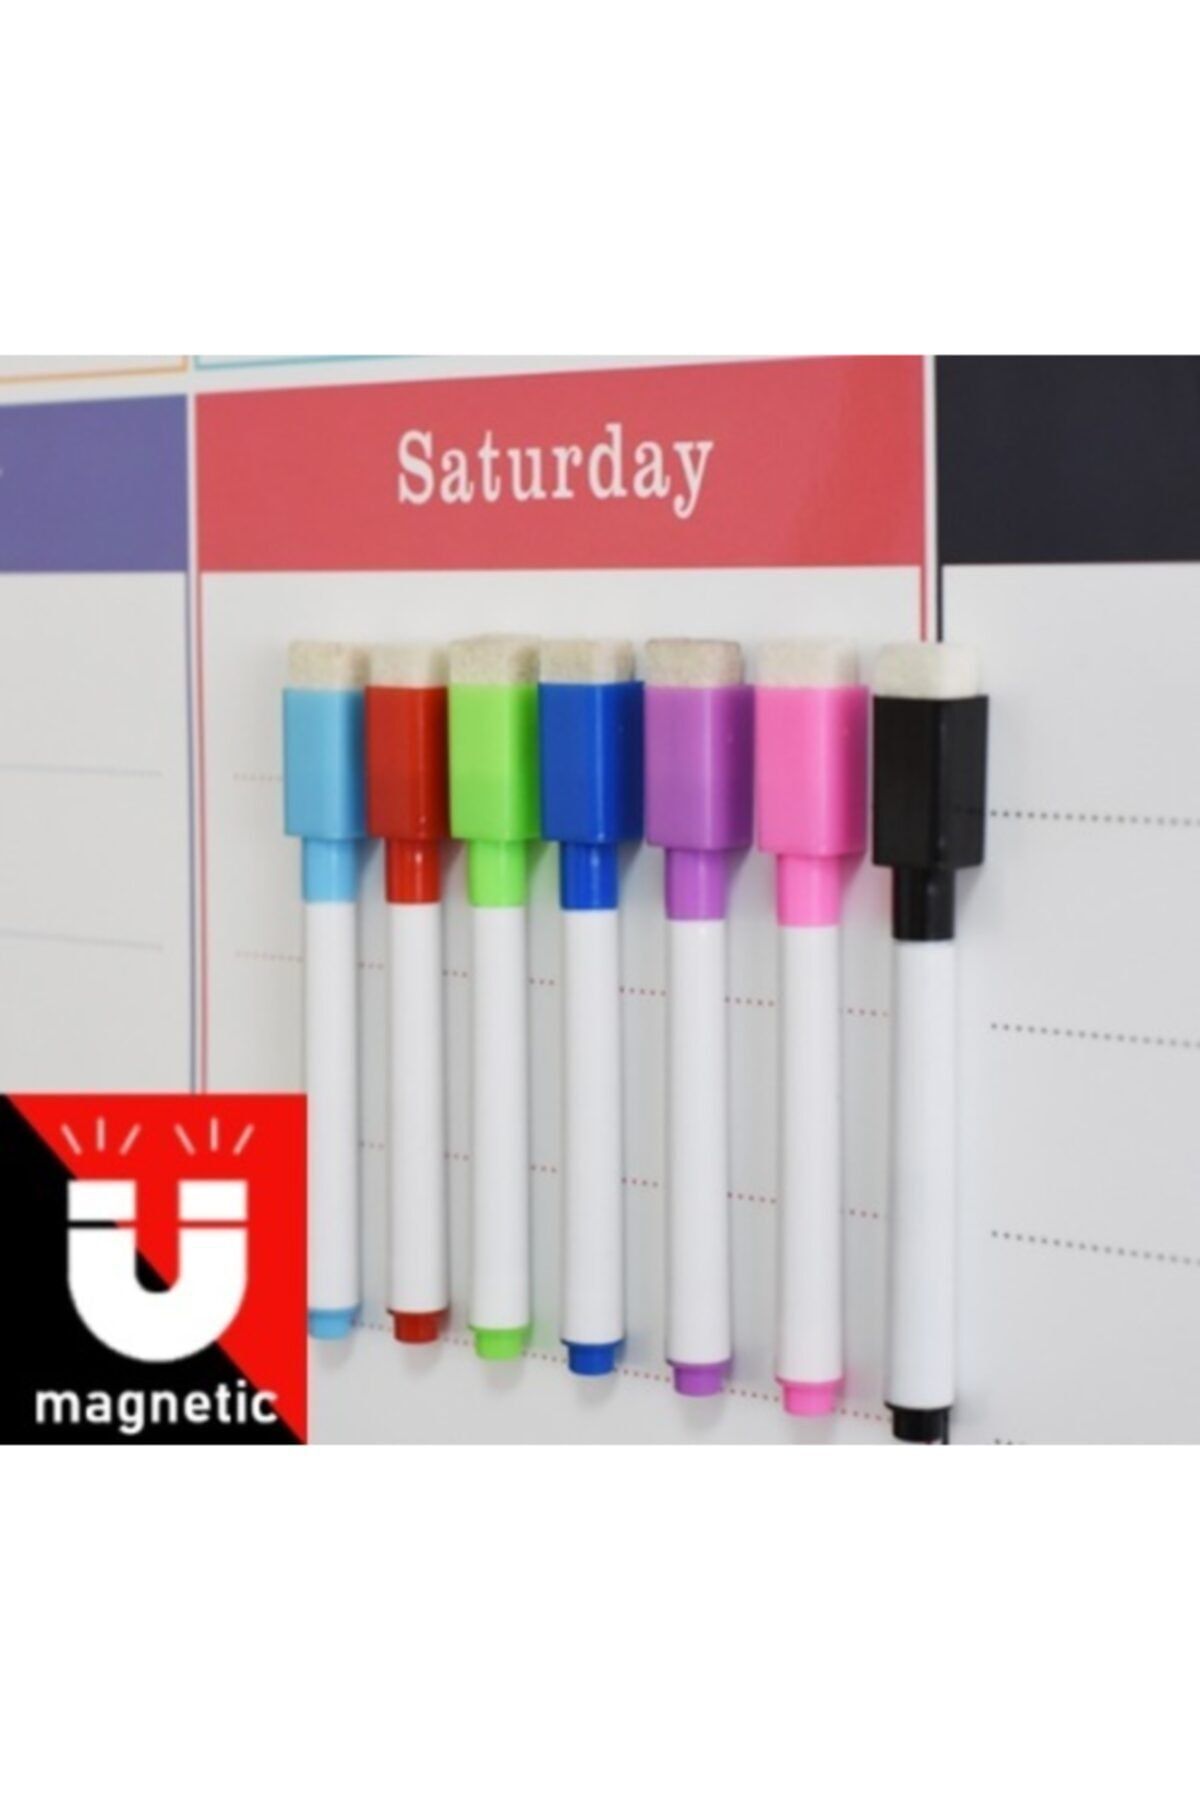 Dünya Magnet 6 Adet Karışık Renkli Mıknatıslı Silgili Akıllı Tahta Kalemi, Silinebilir Beyaz Tahta Kalemi